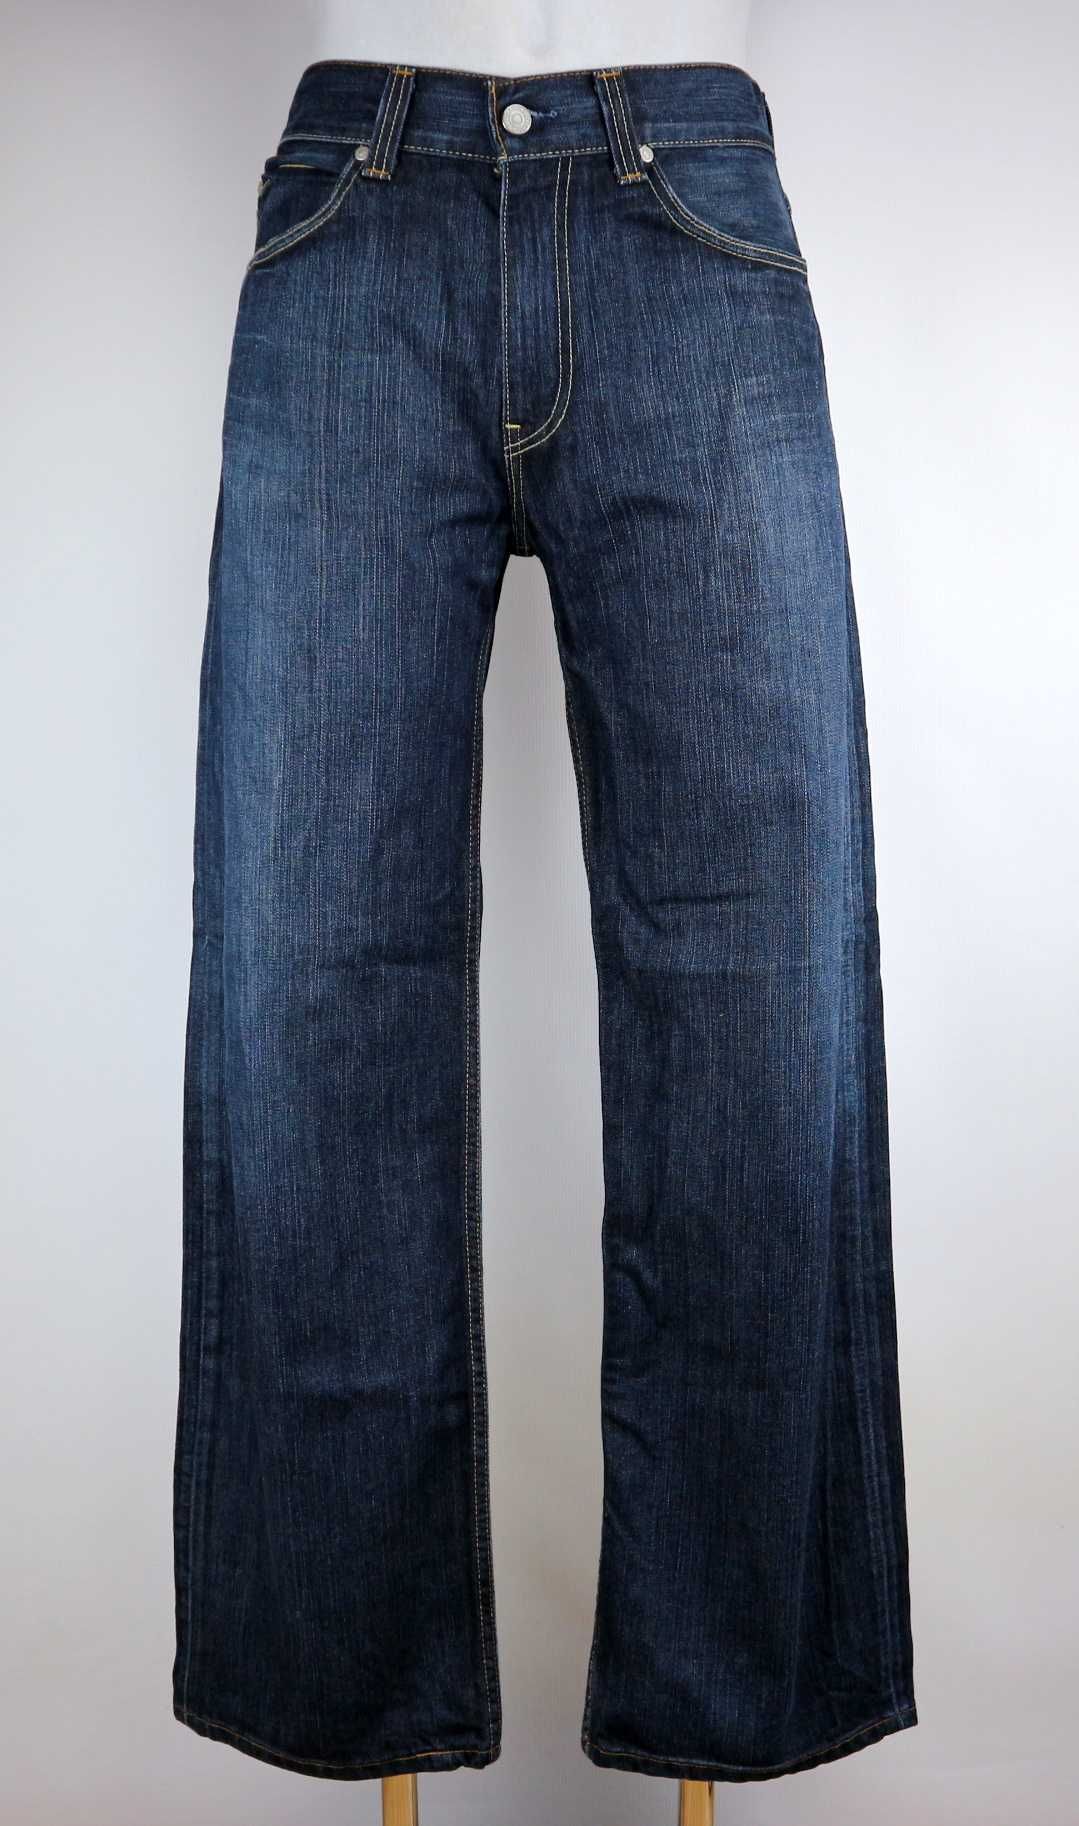 Levis 509 spodnie jeansy W34 L32 pas 2 x 46 cm